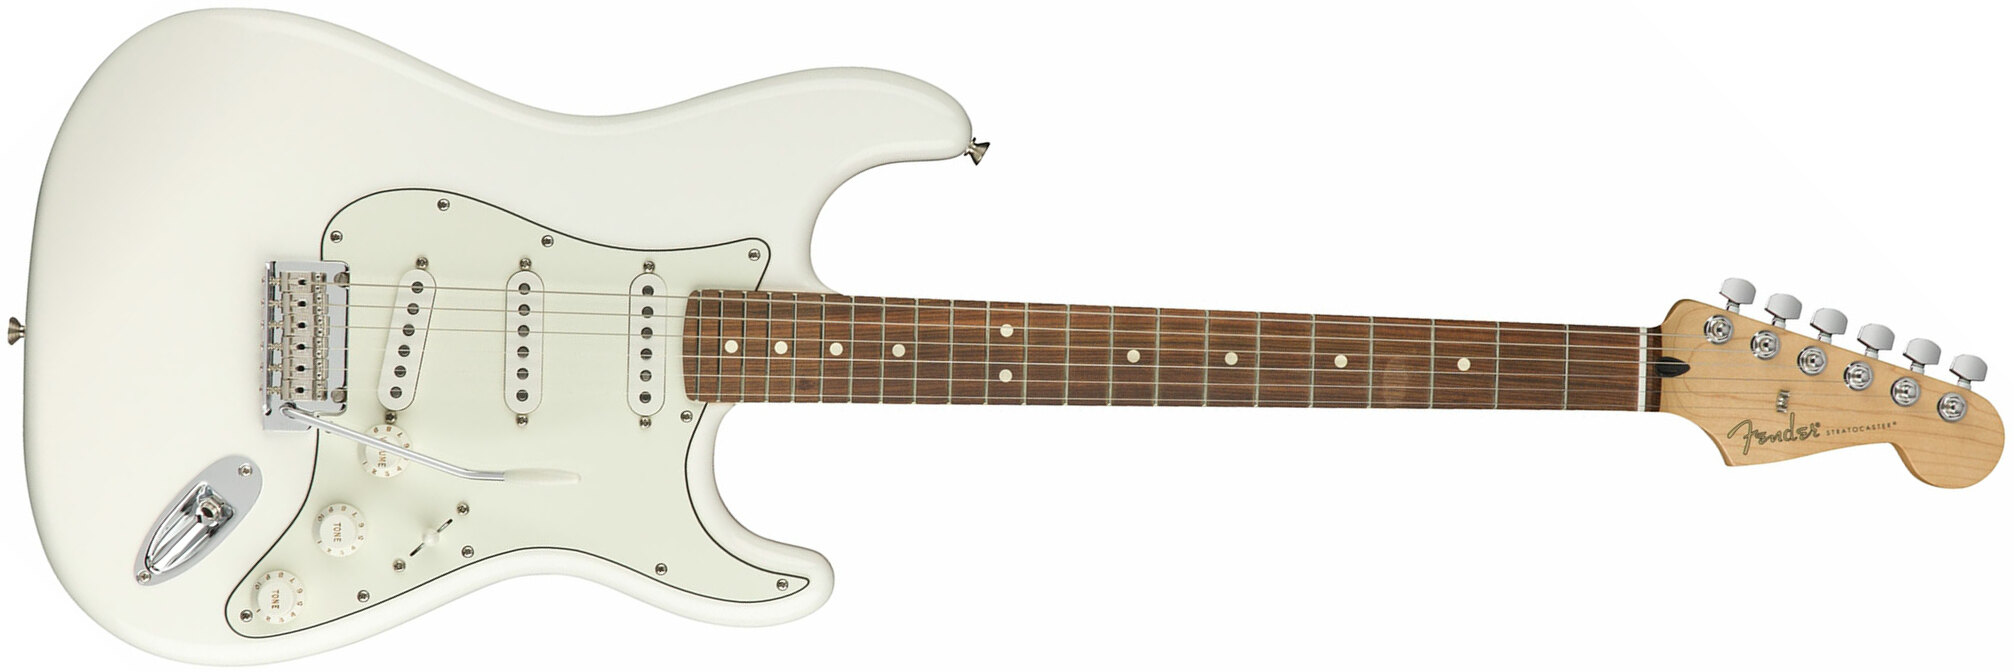 Fender Strat Player Mex Sss Pf - Polar White - Guitare Électrique Forme Str - Main picture